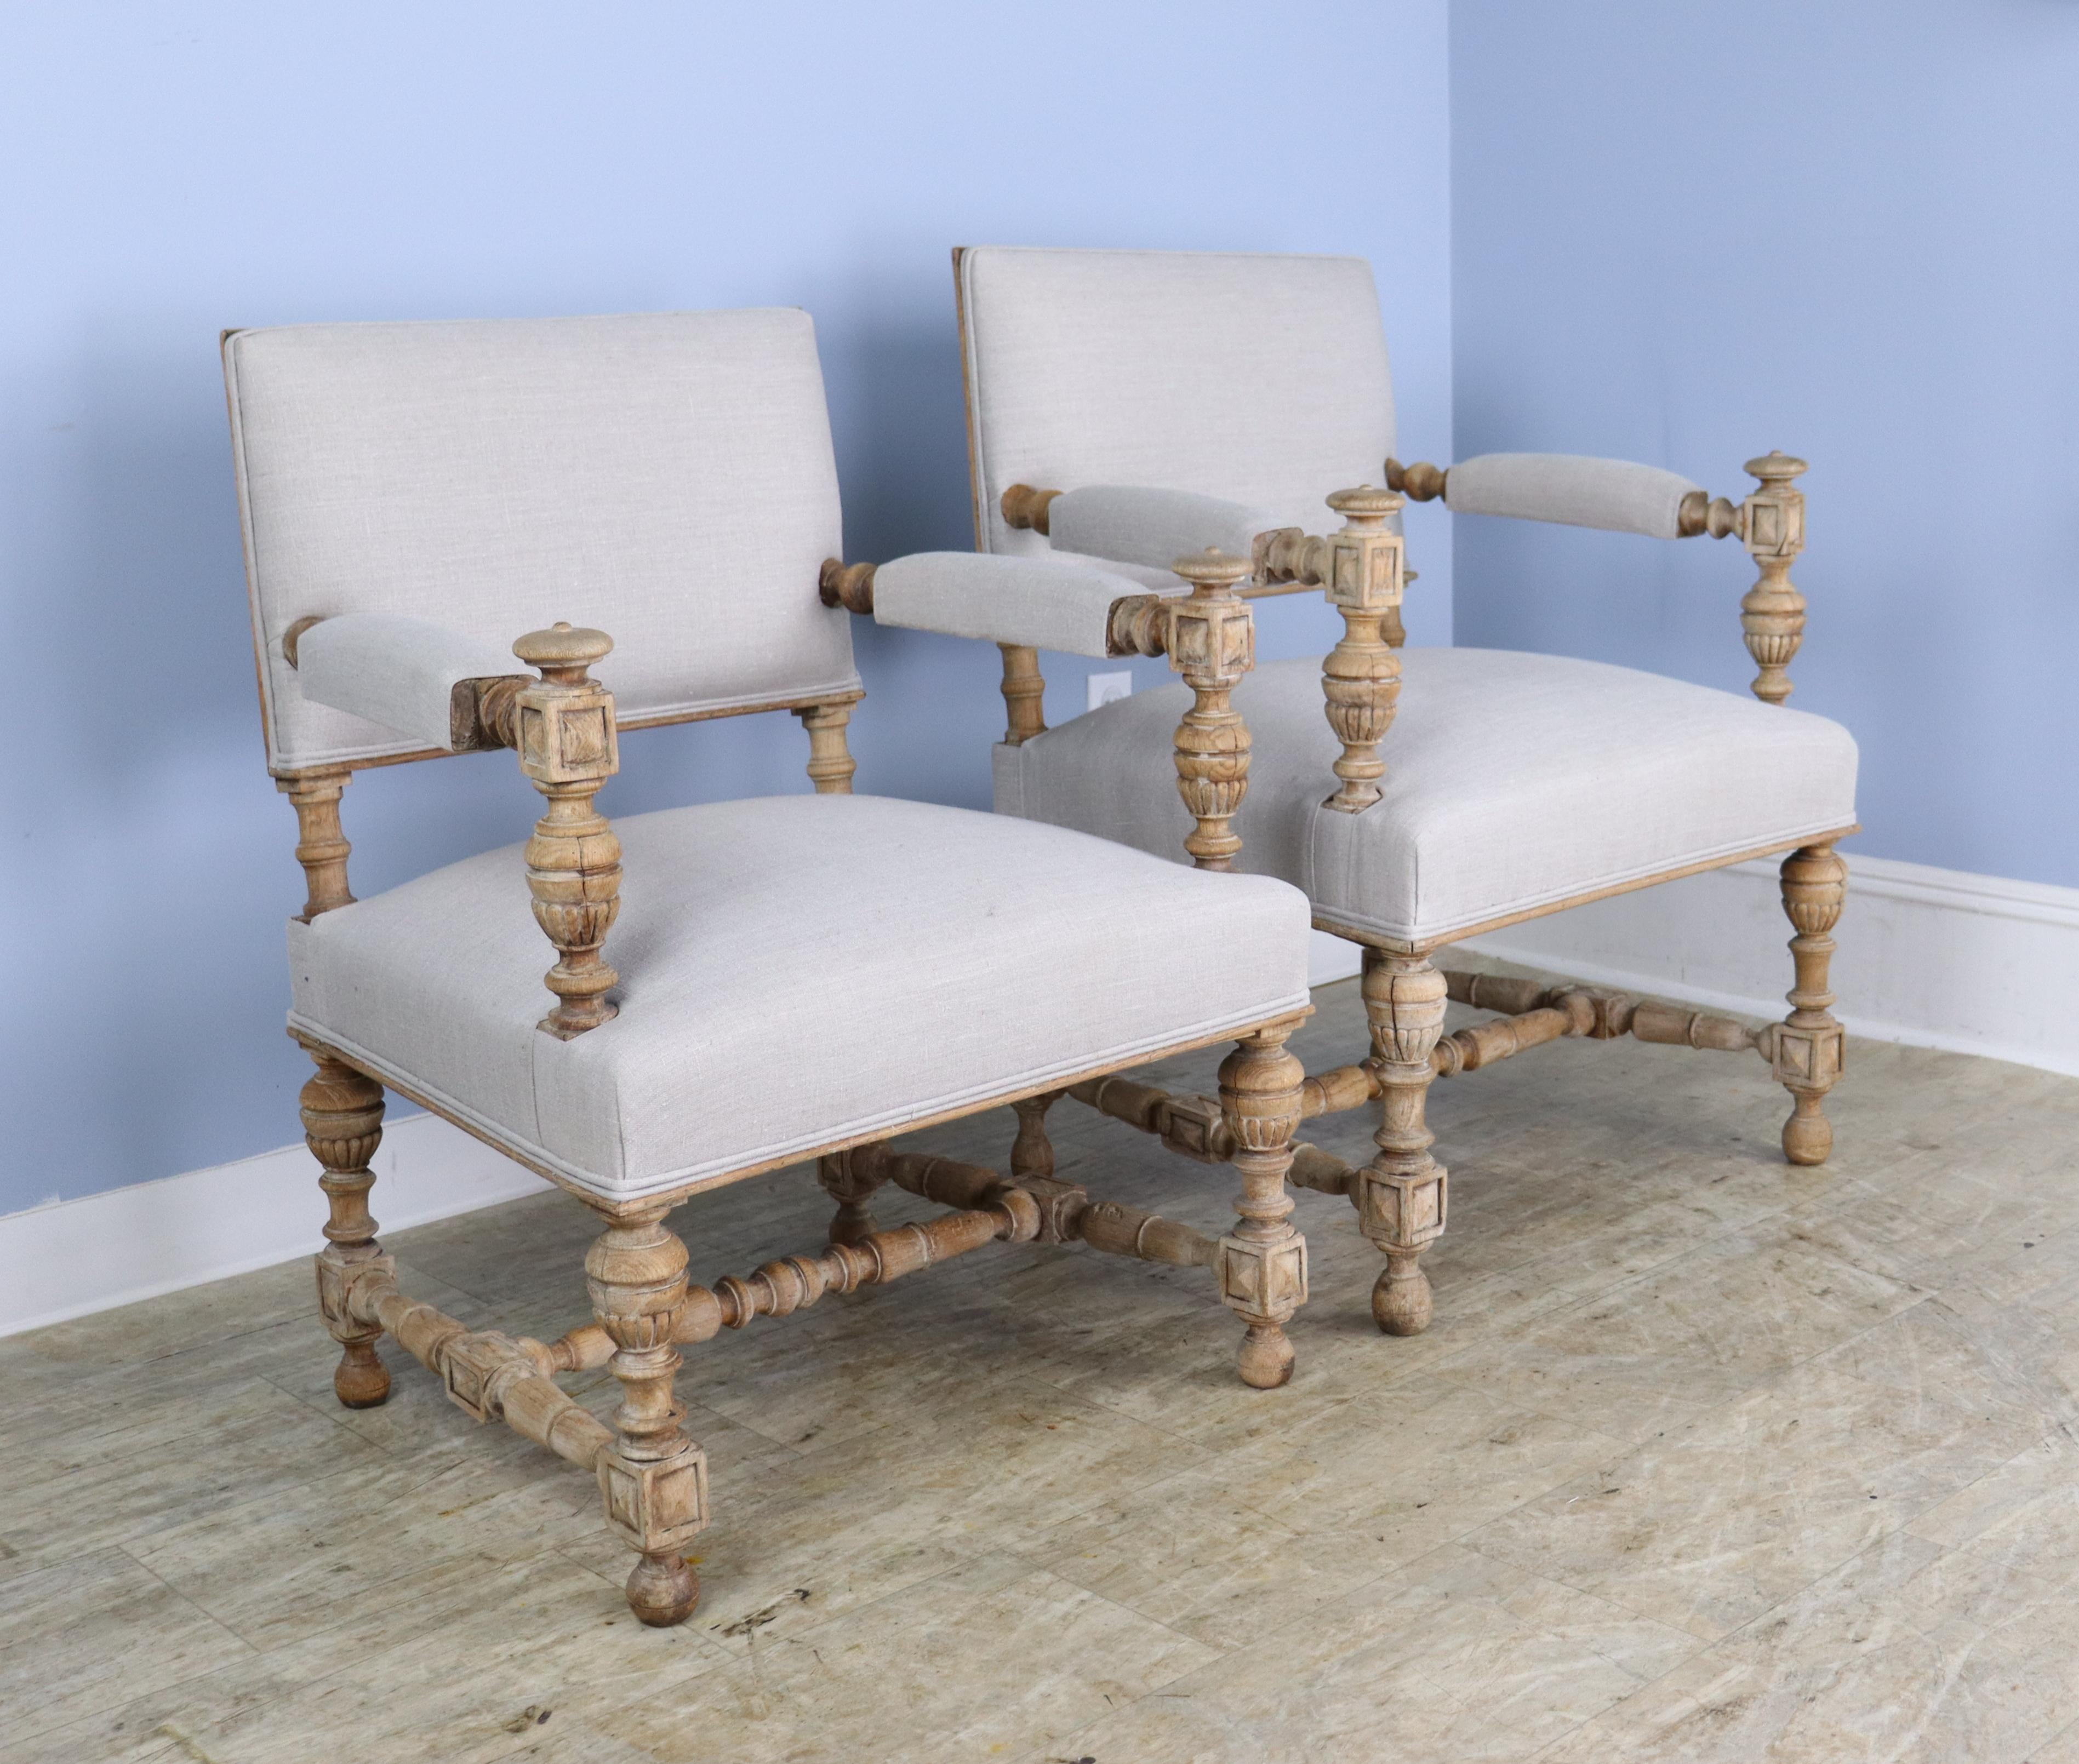 Ein wunderschönes Paar Sessel aus französischer Eiche, gebleicht und neu gepolstert mit cremefarbenem Leinen für einen sauberen, modernen Look.  Die Formalität der komplizierten Drechselarbeiten und Schnitzereien wird durch die Bleiche